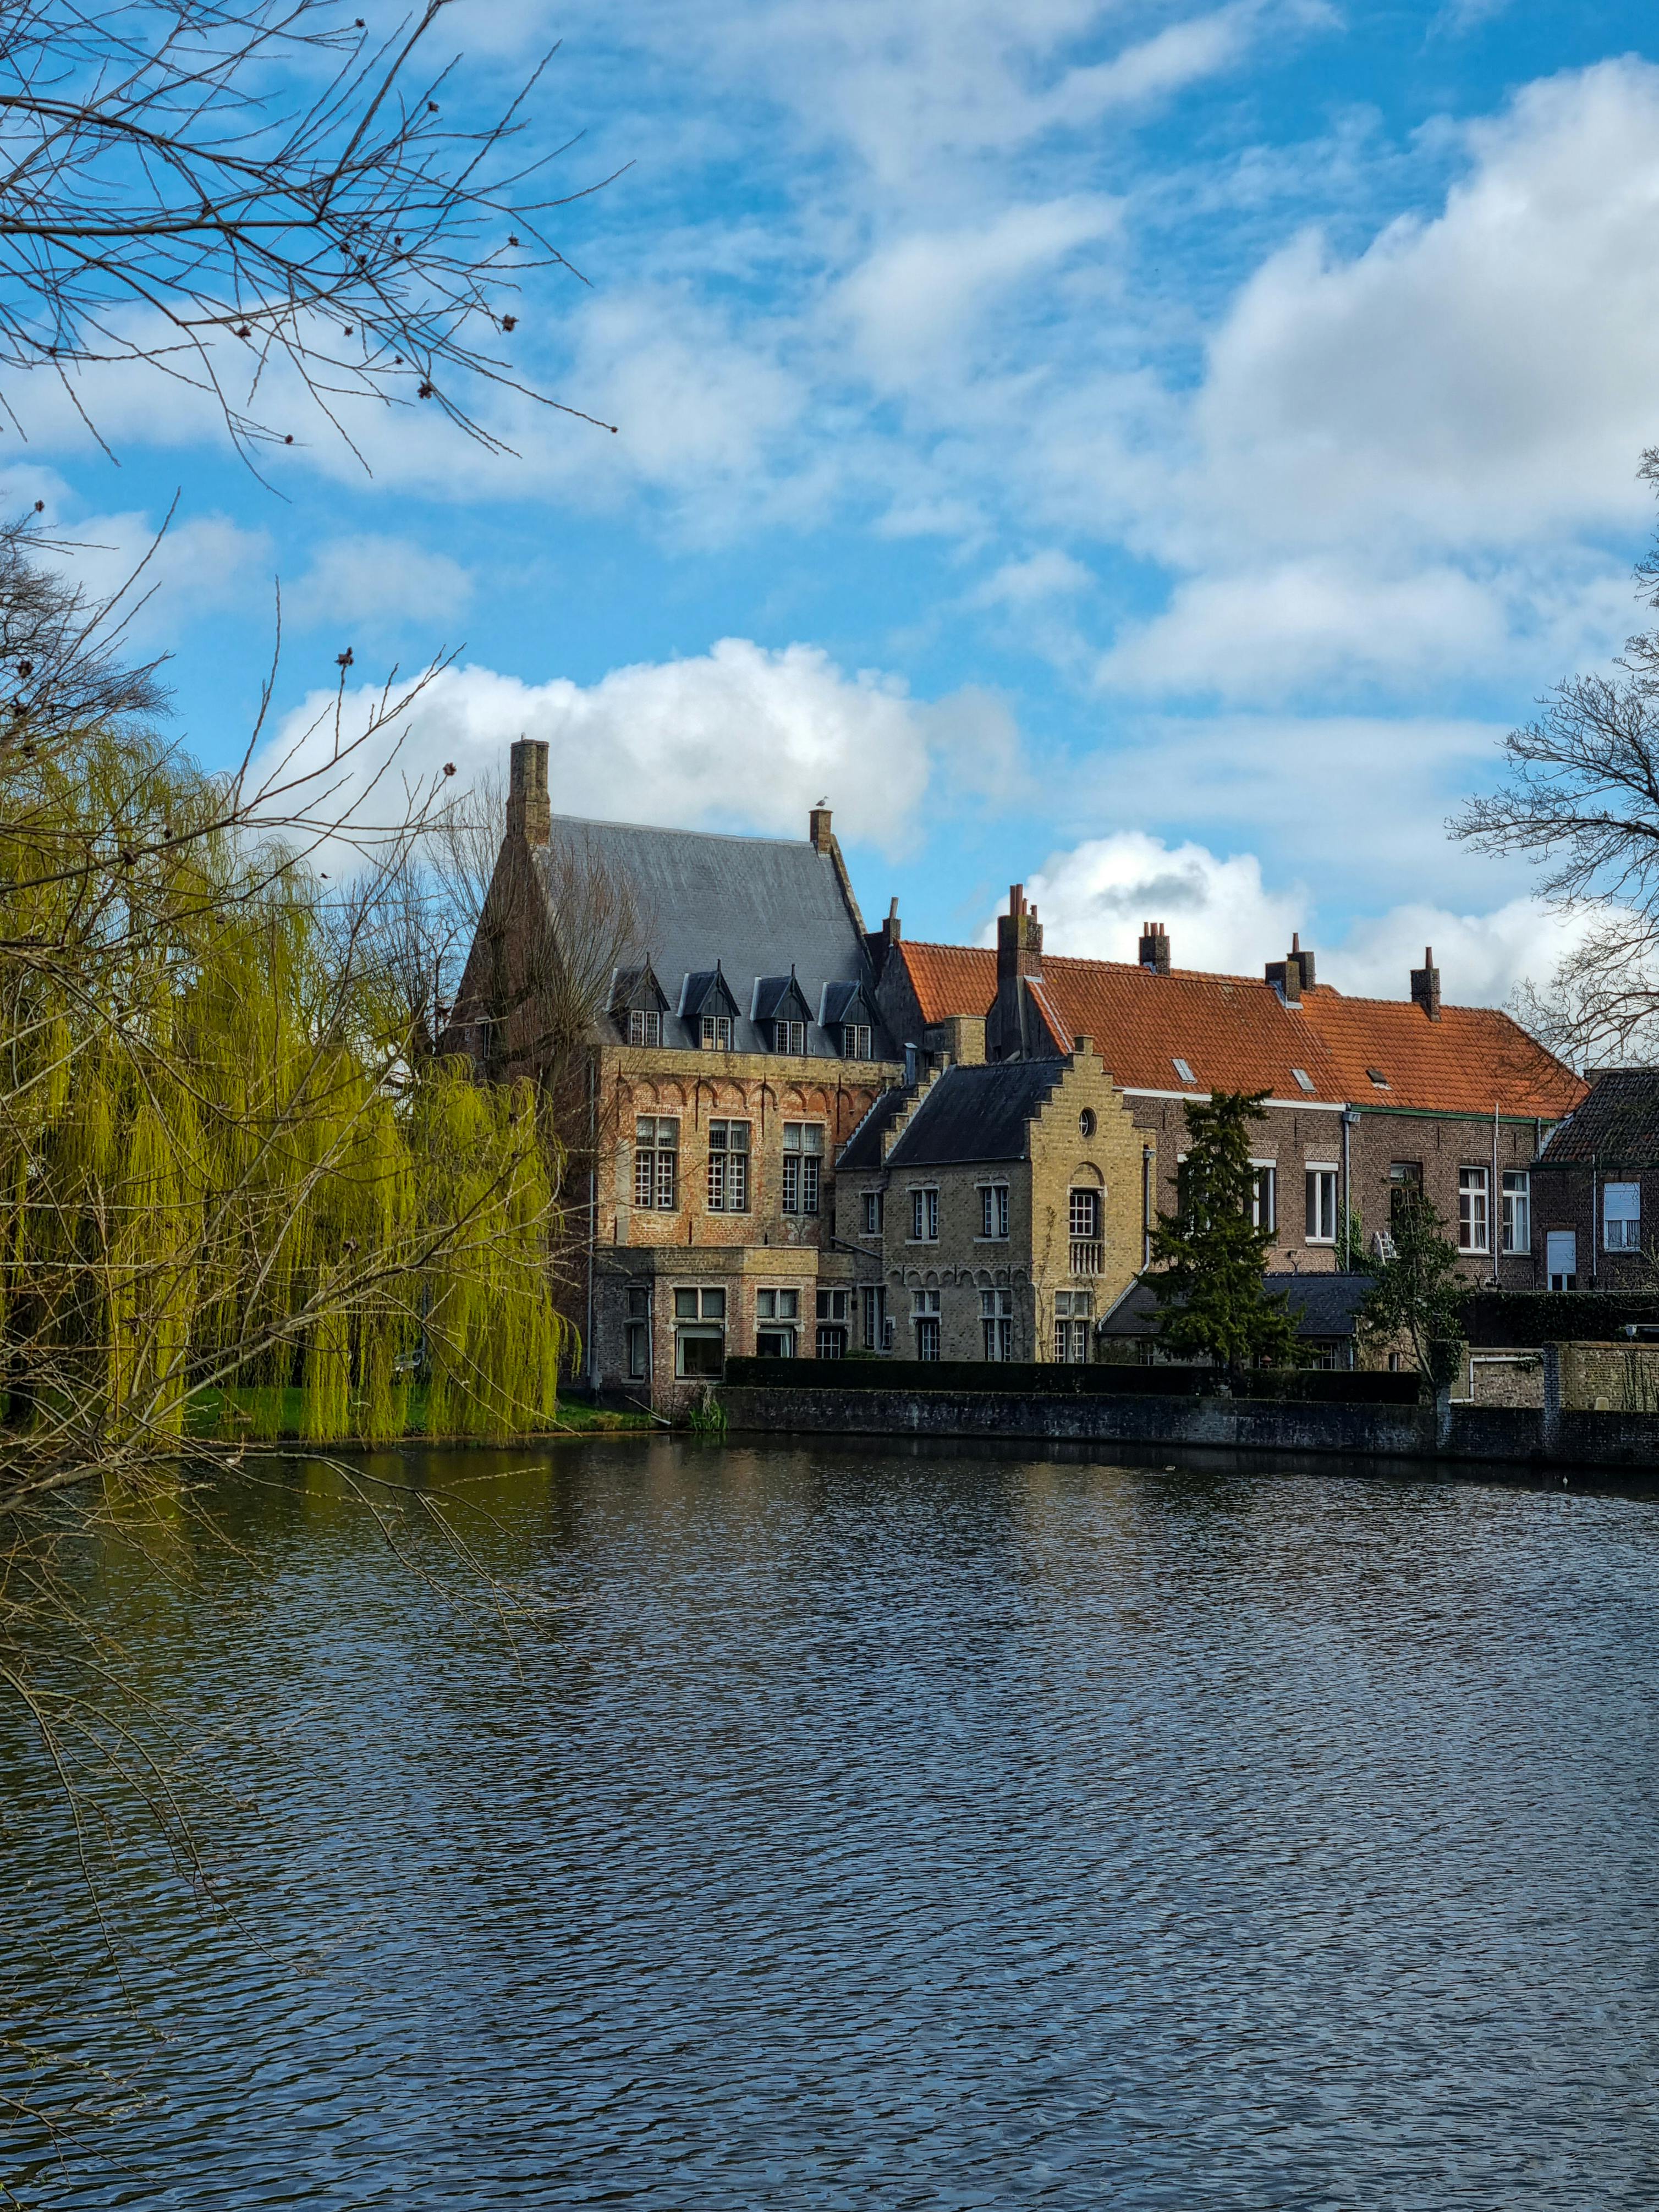 Tietovisa Brugesta, Belgia: Kuinka hyvin tunnet tämän keskiaikaisen kaupungin?